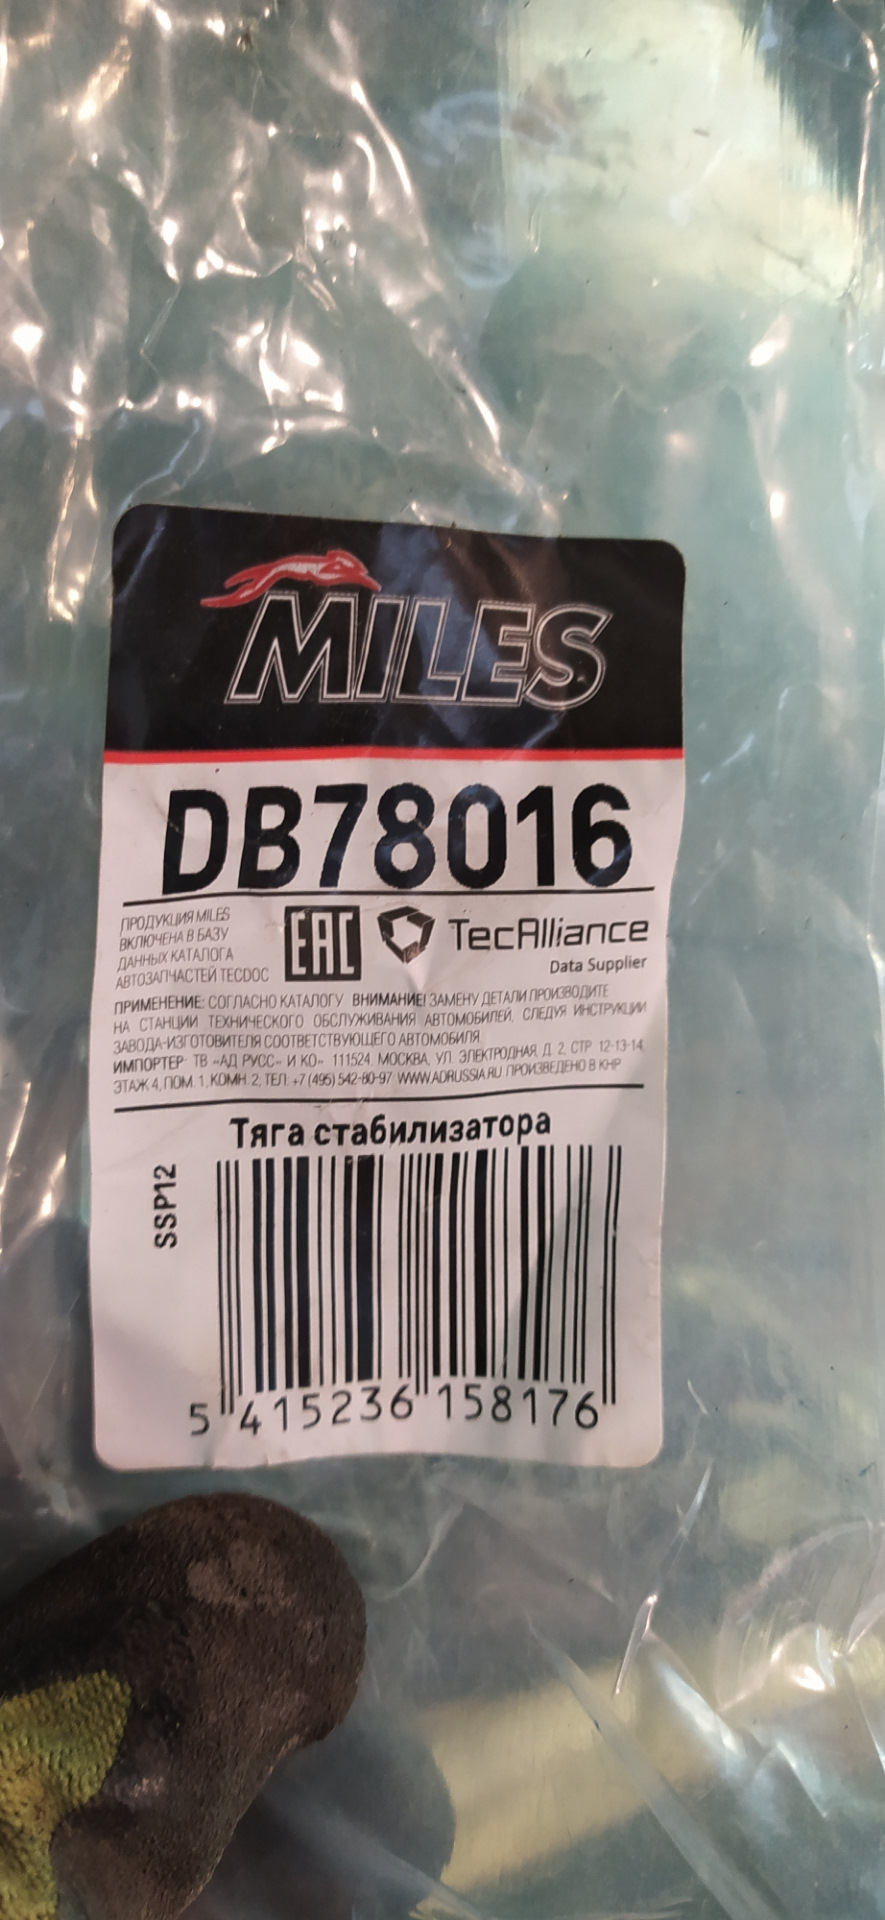 Miles db78016. Производитель miles отзывы